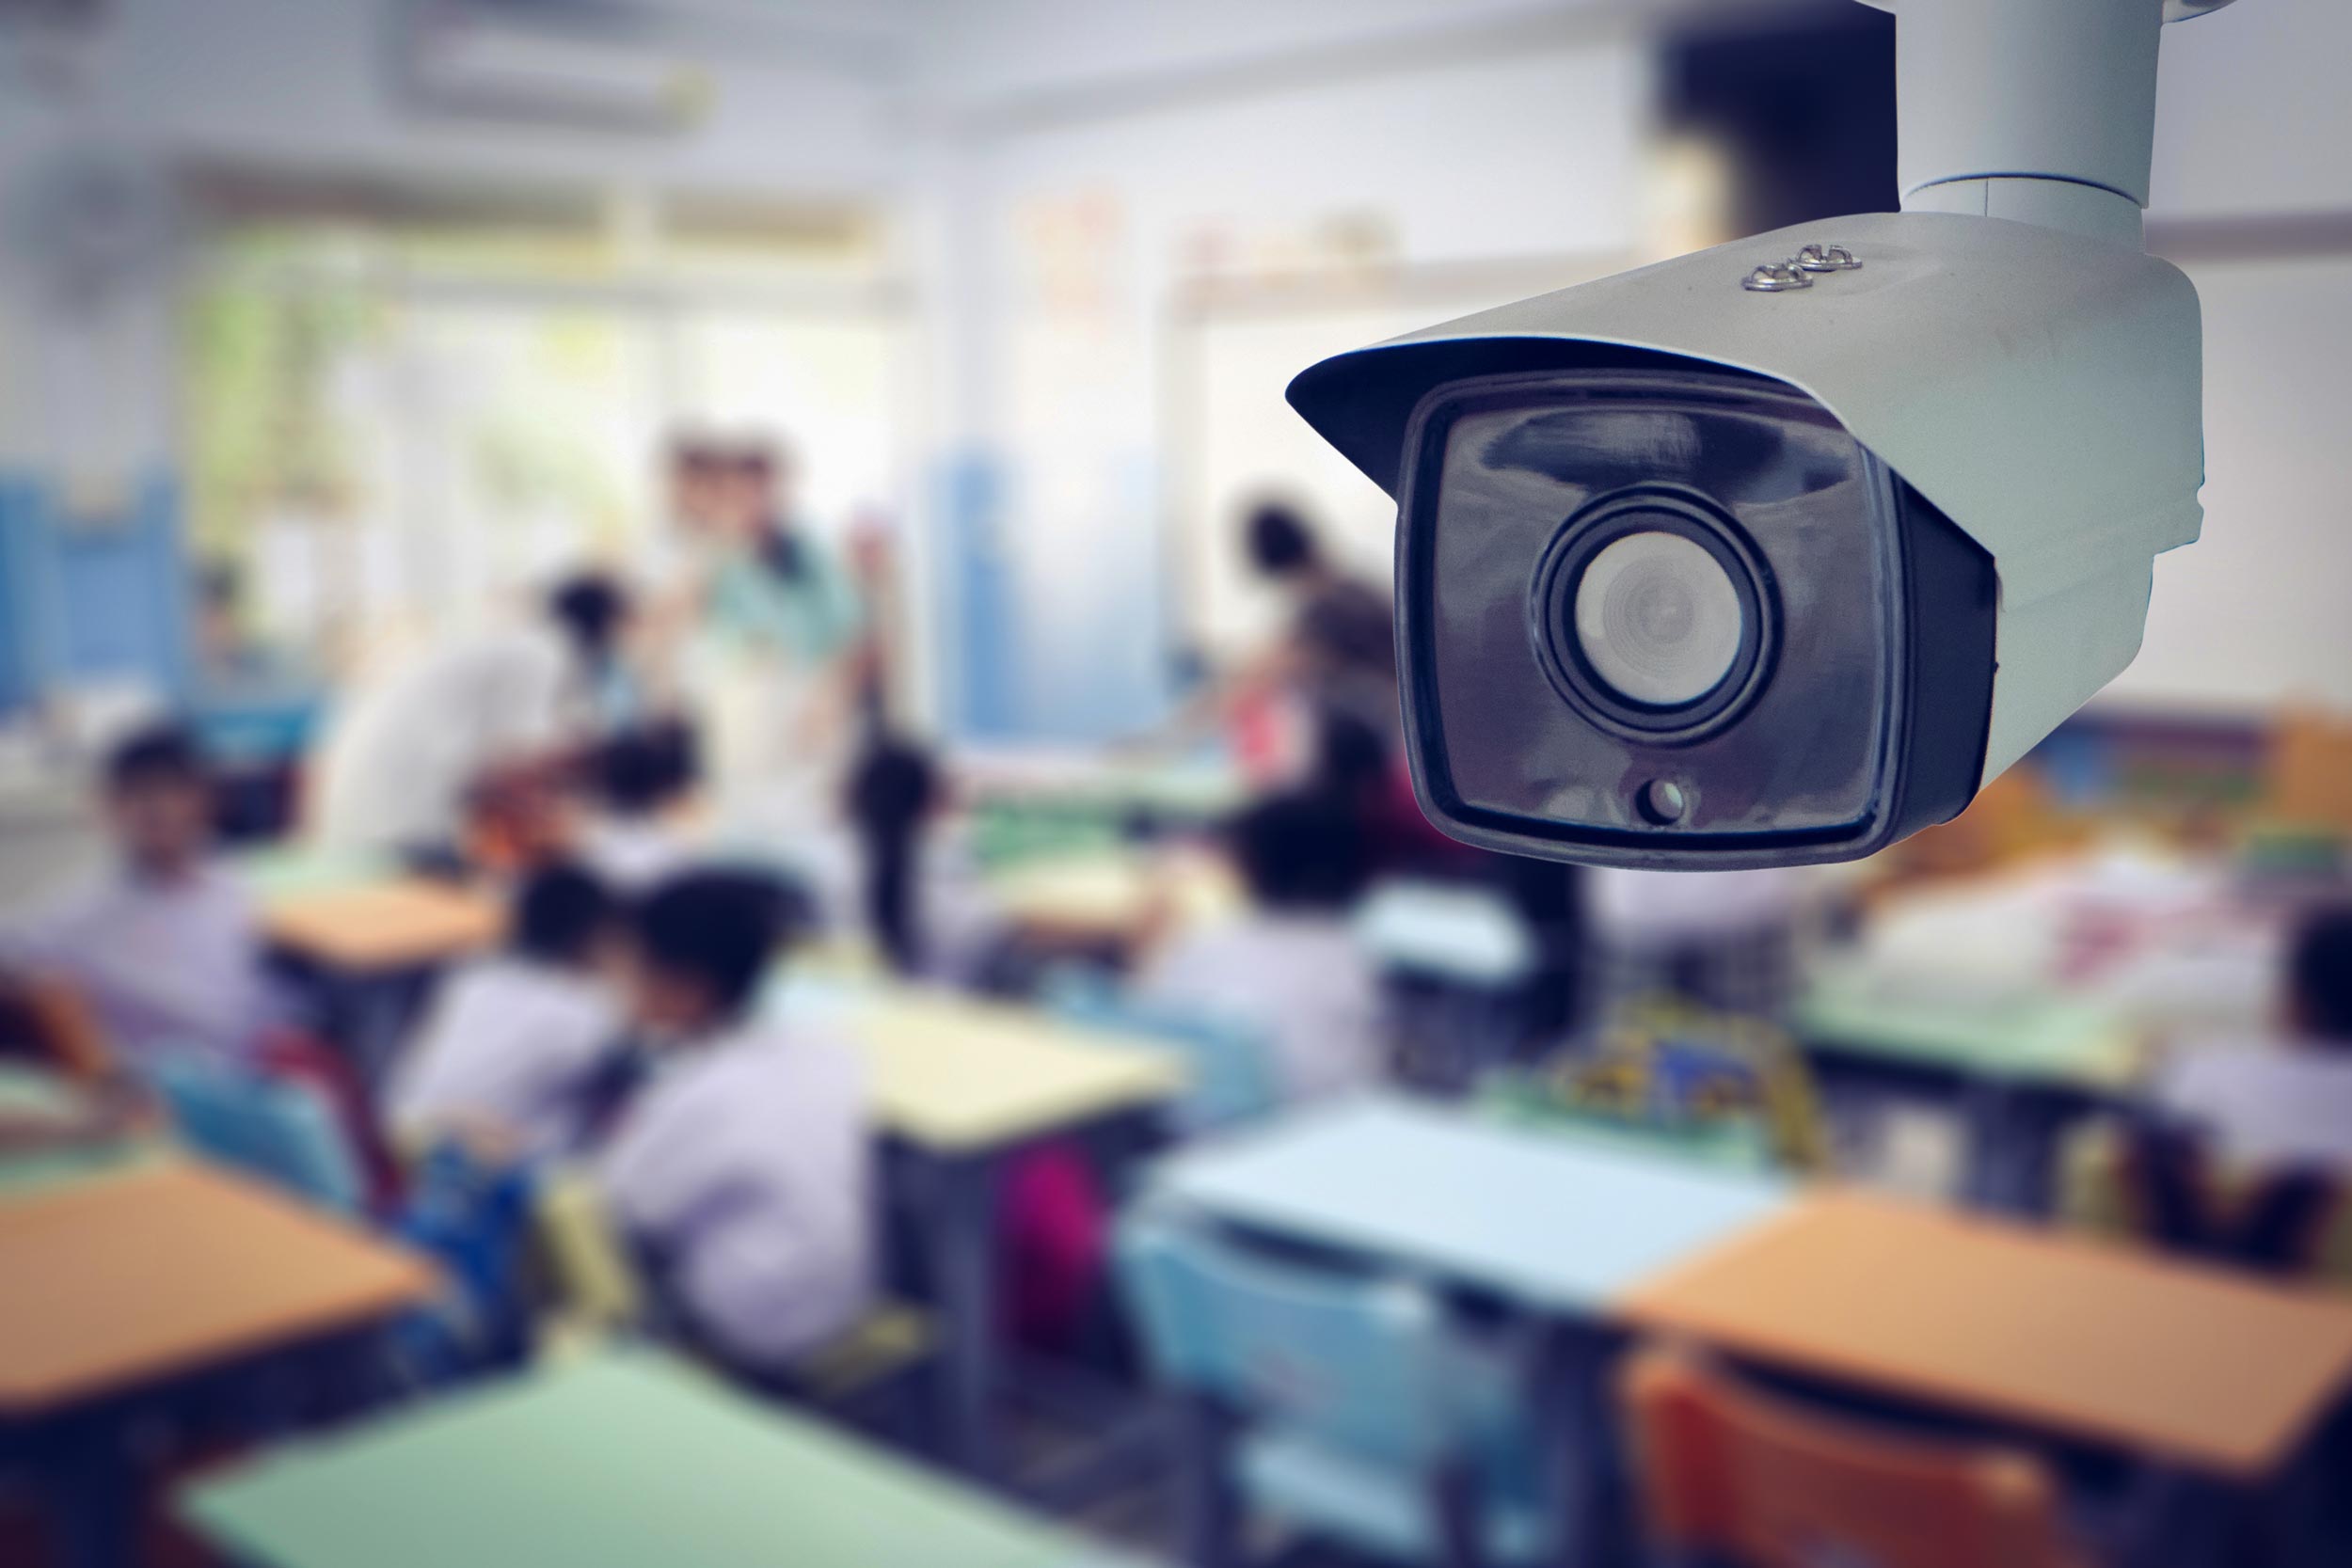 argumentative essay about cctv cameras in school